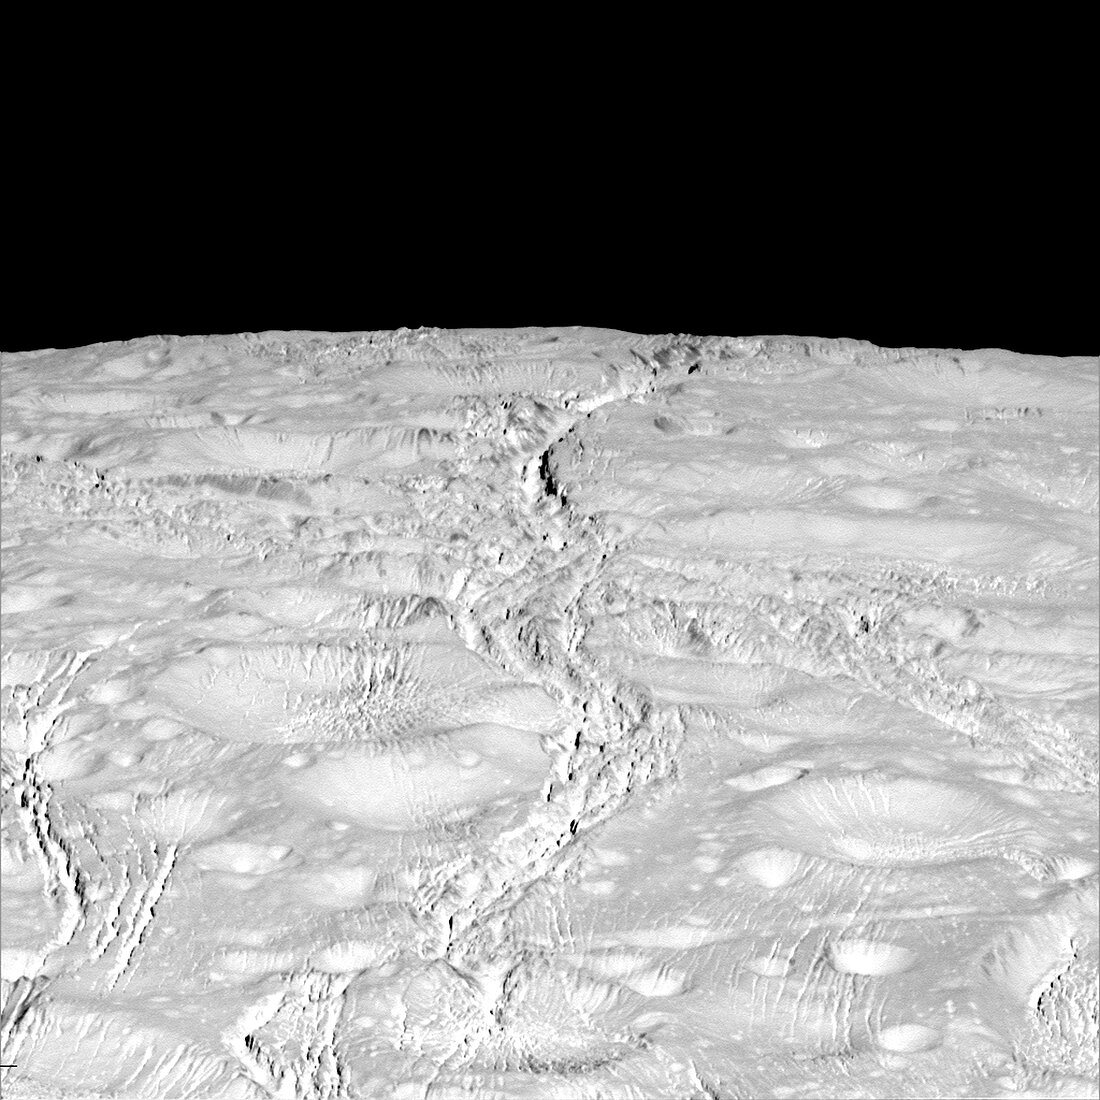 Saturn's moon Enceladus, Cassini image